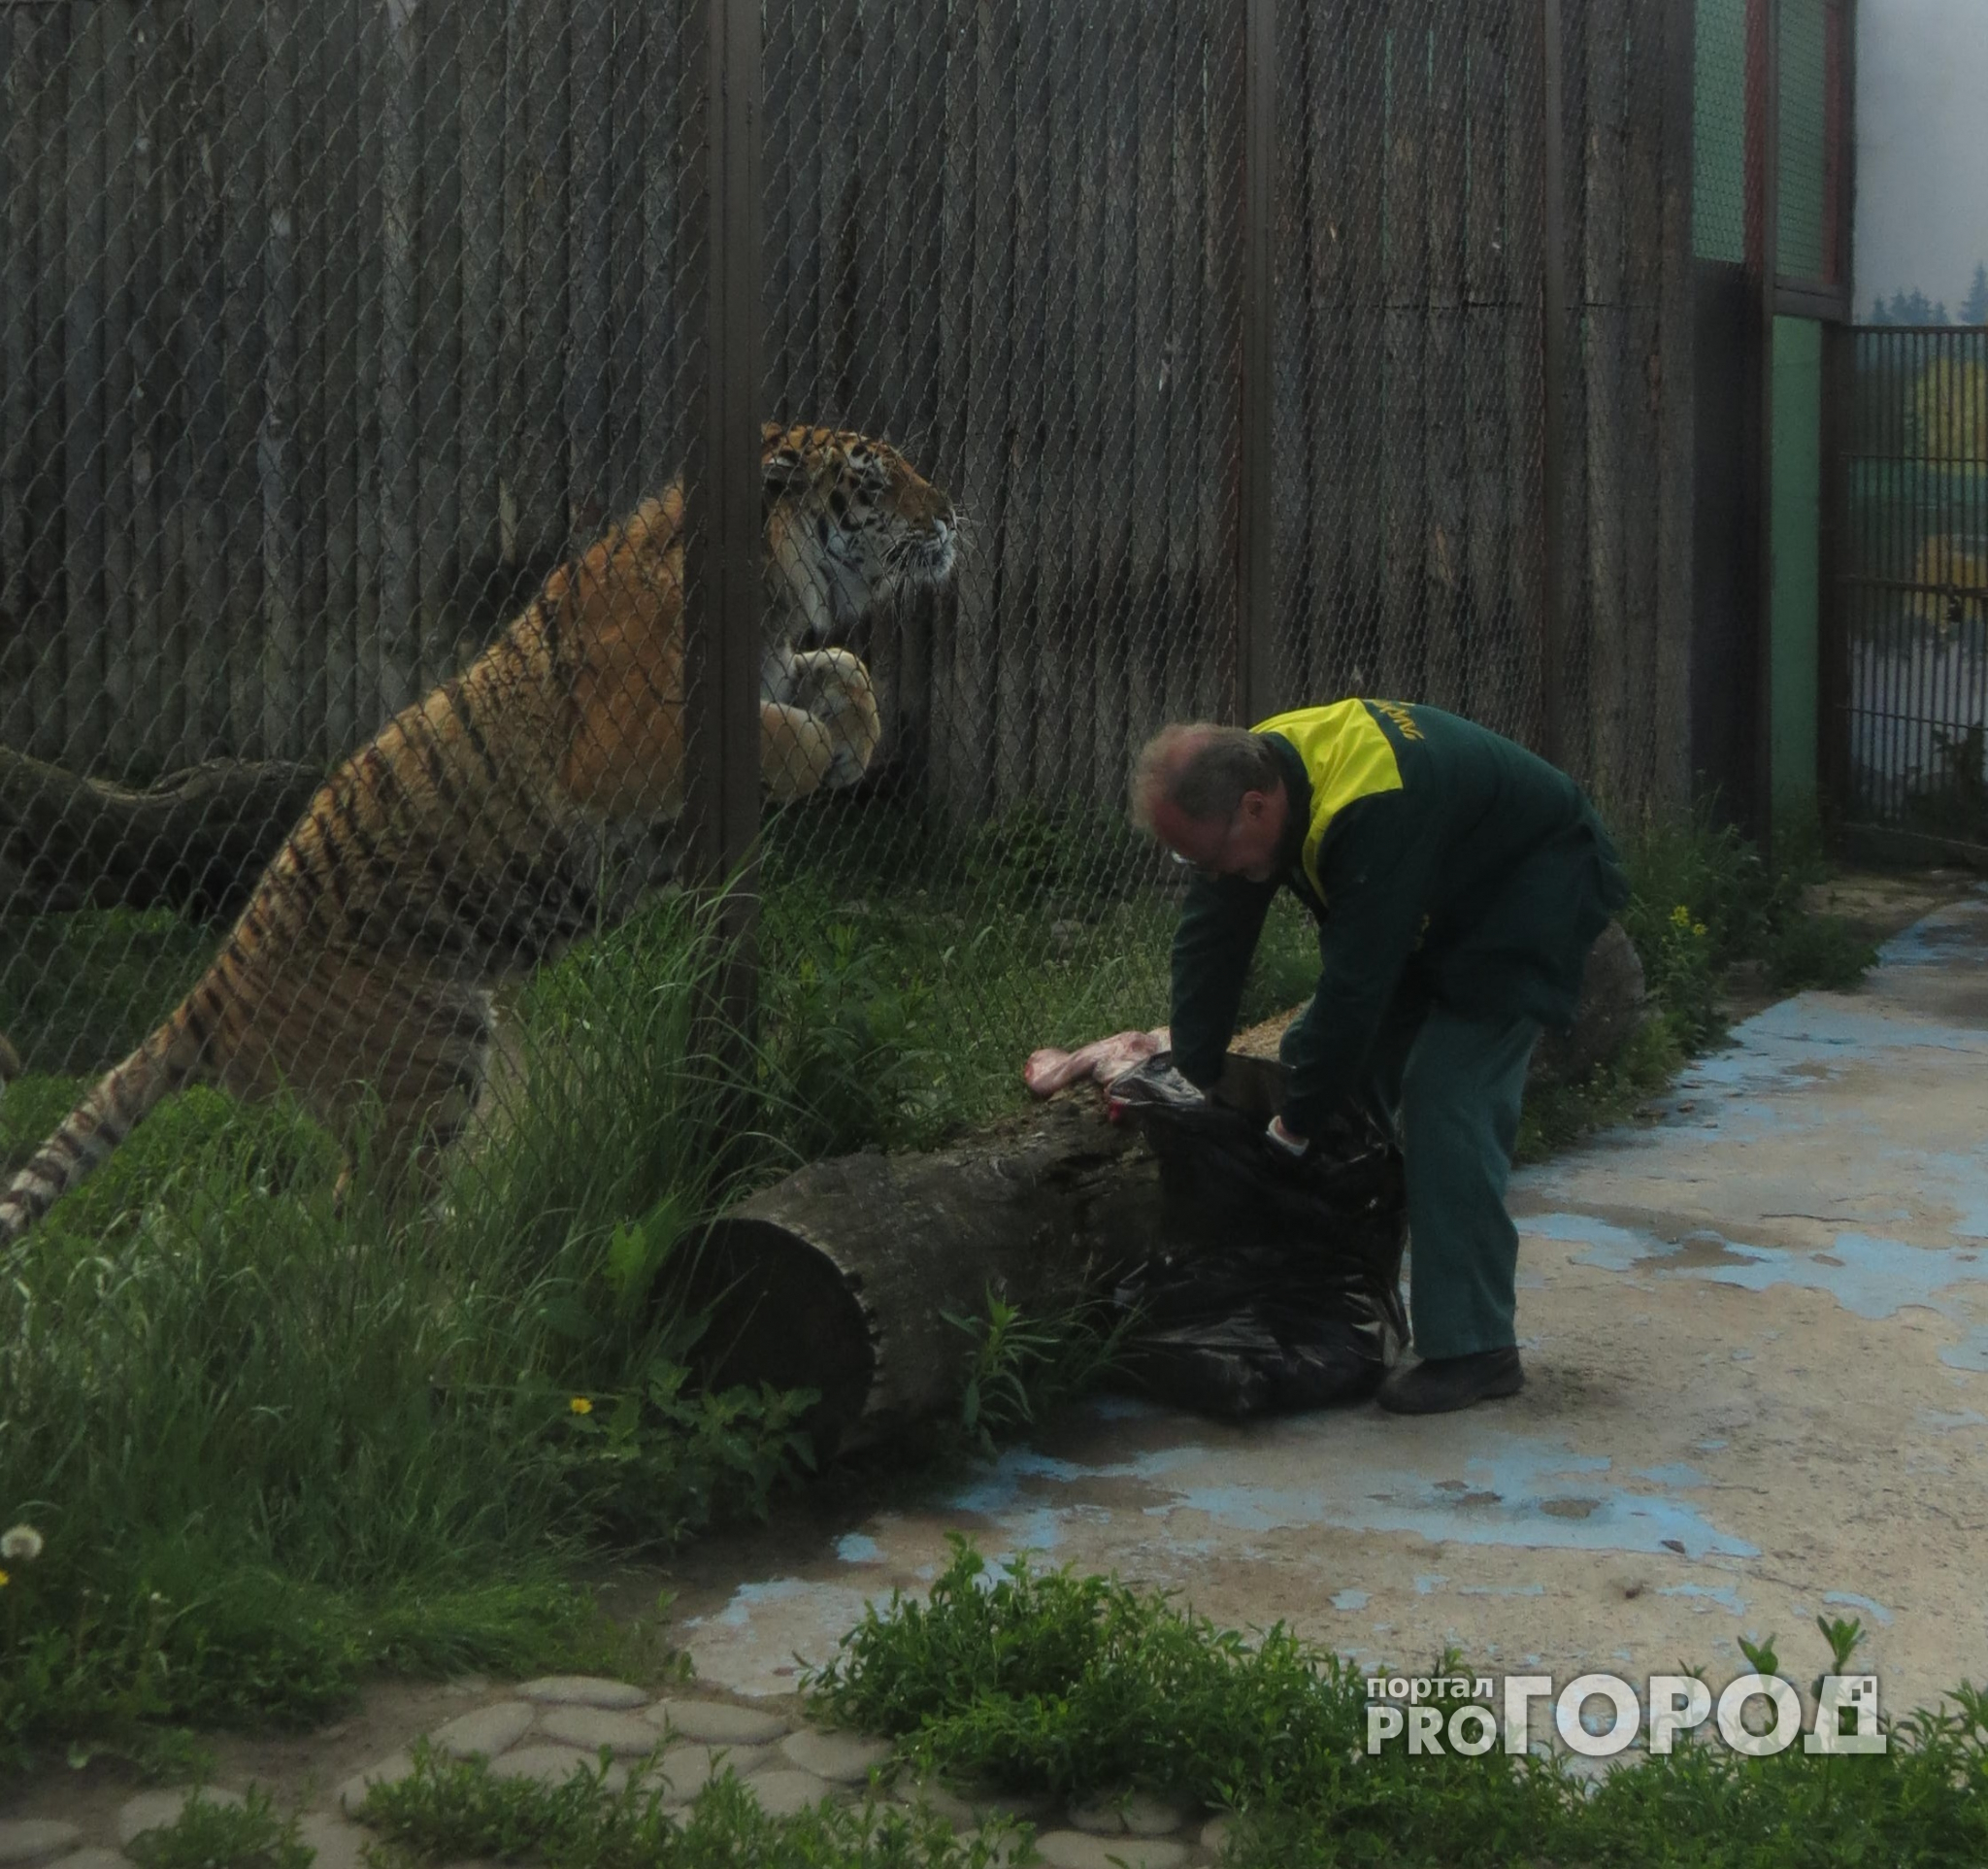 Нижегородский зоотехник: "Одним ударом хищник может убить взрослого мужчину"